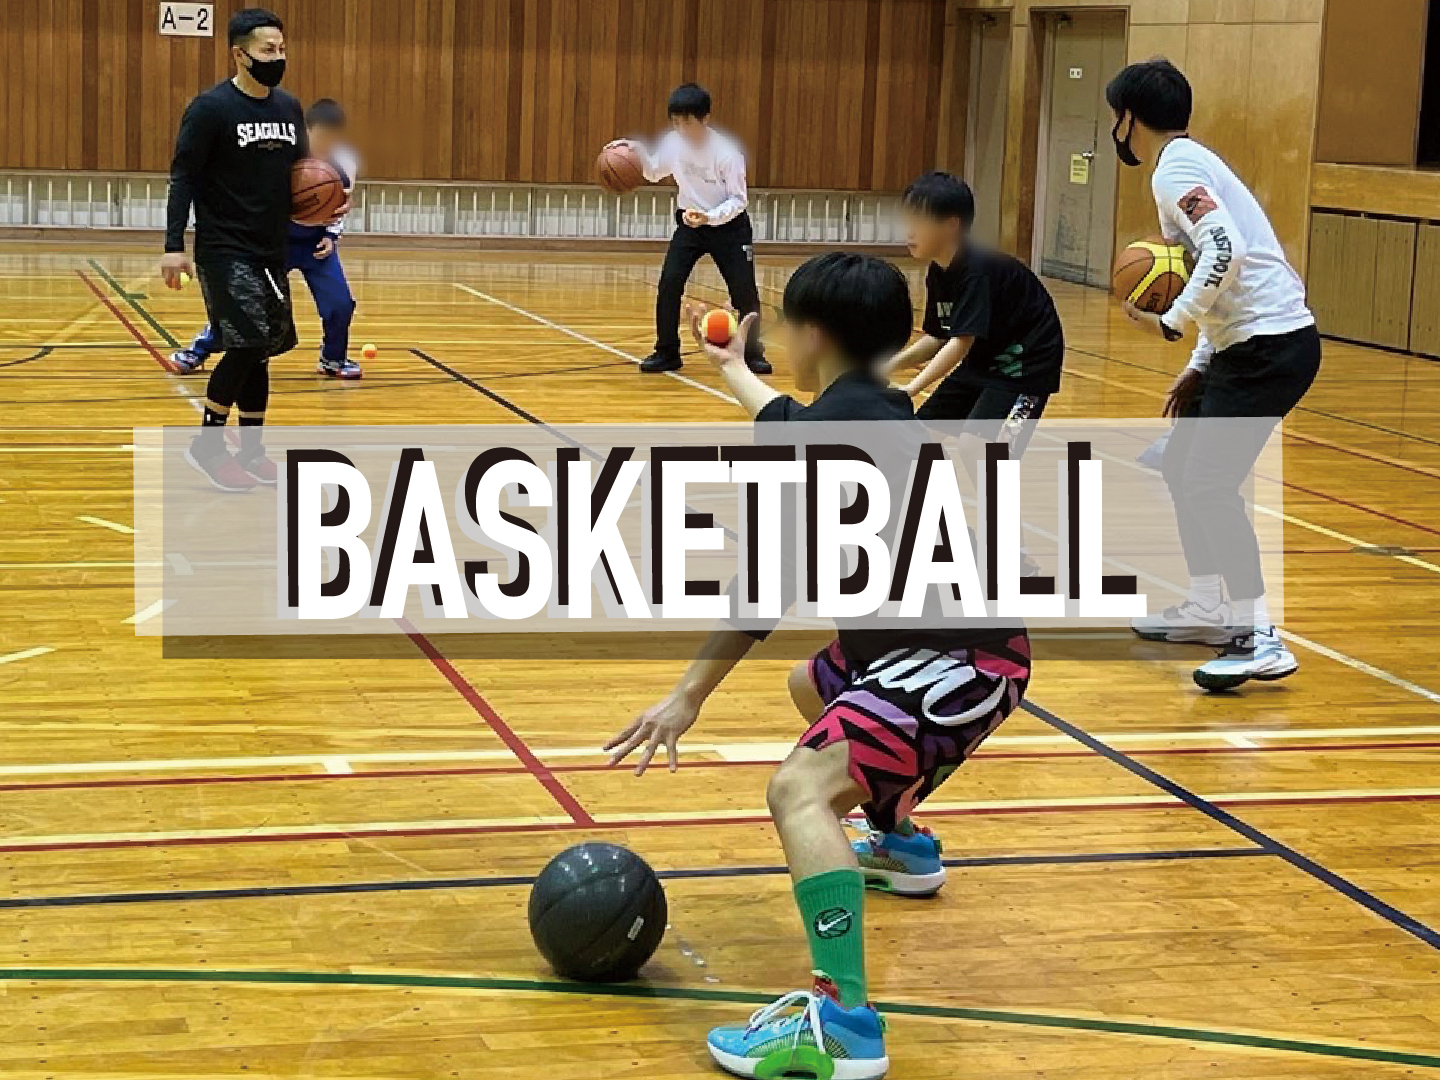 諏訪市内の体育館でバスケットボールをする風景